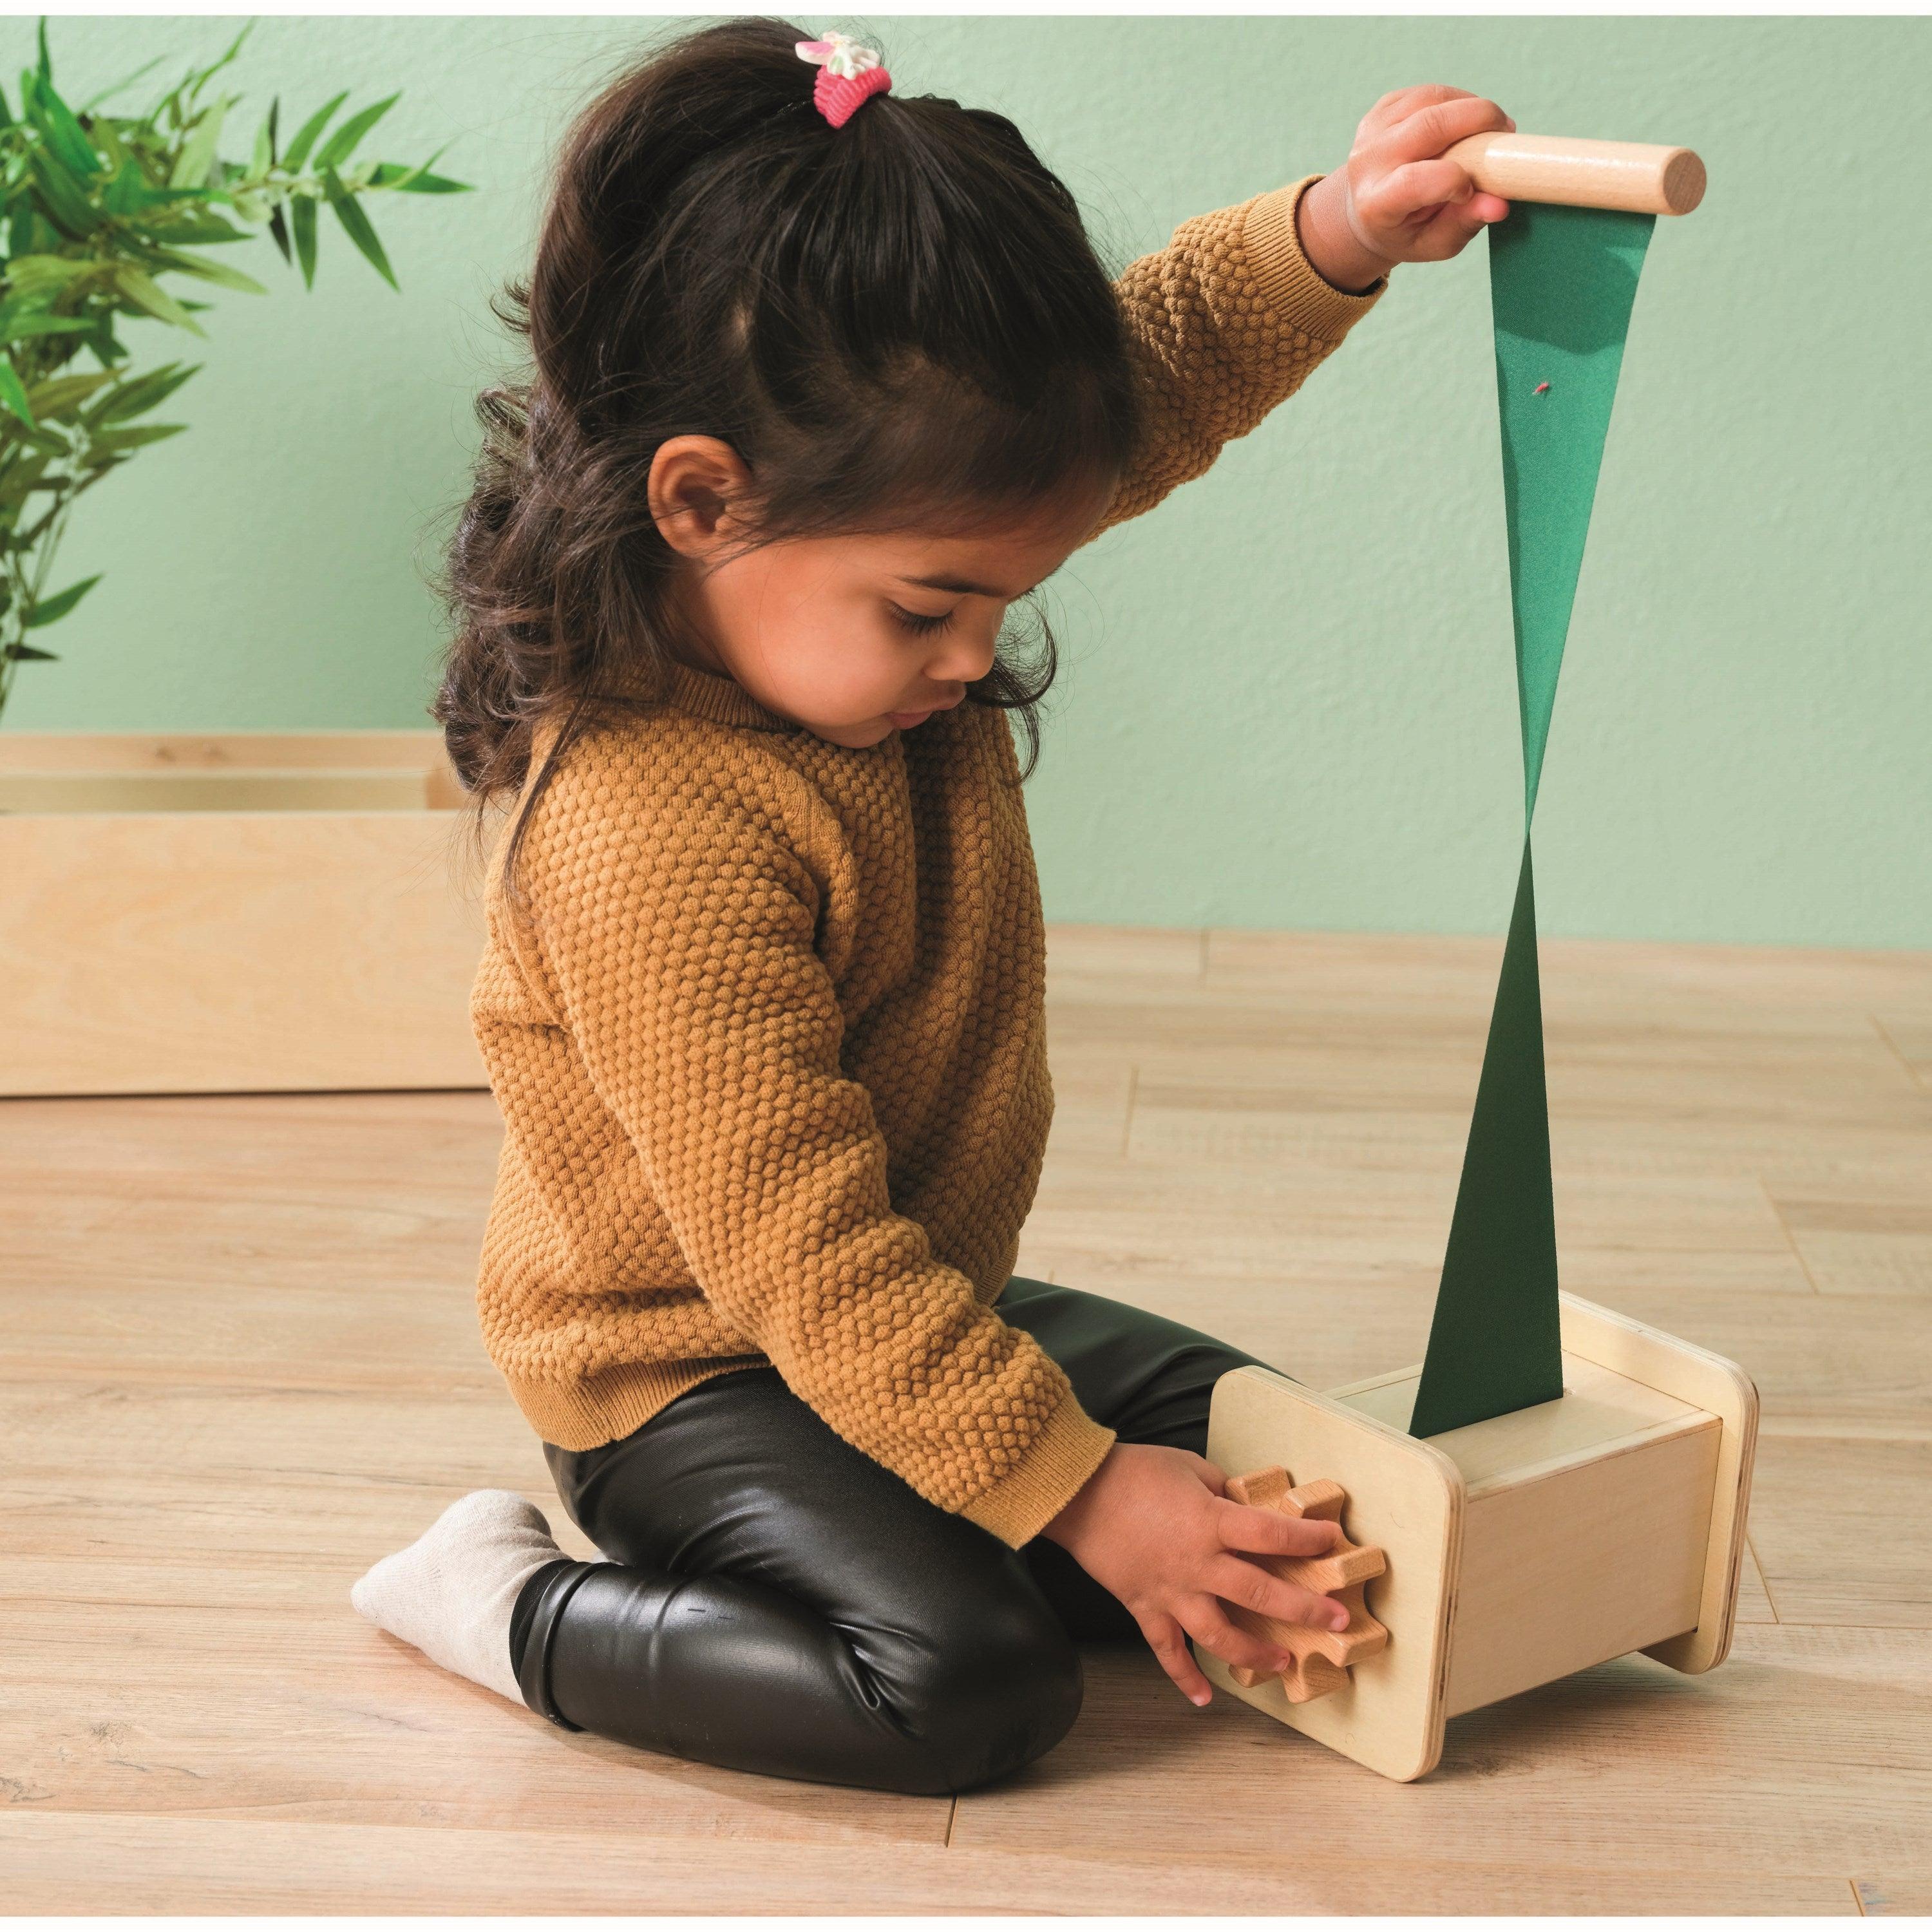 Educo: Wind the Fabric Montessori